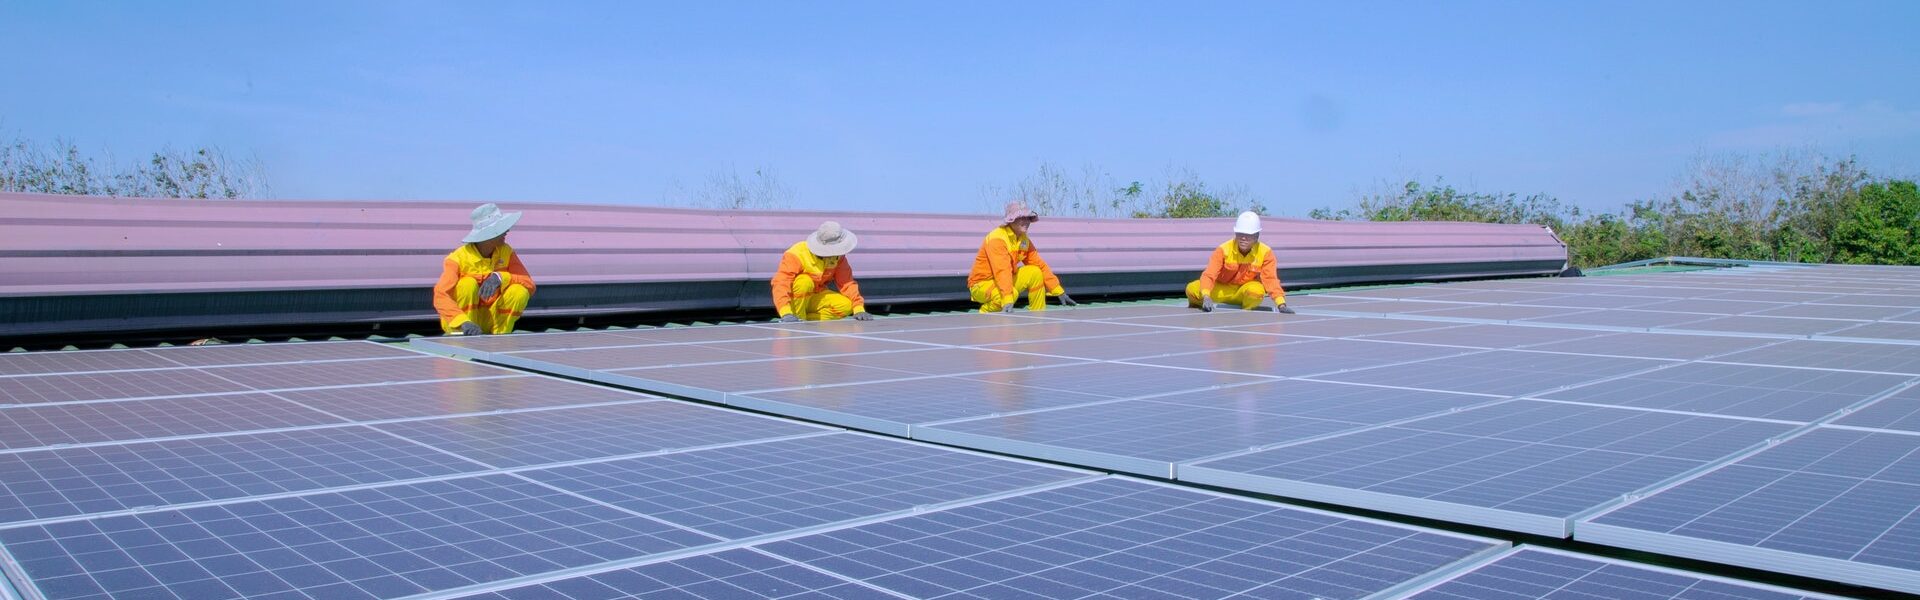 obra placa solar - Mercado de energia solar no Brasil: tudo o que você precisa saber